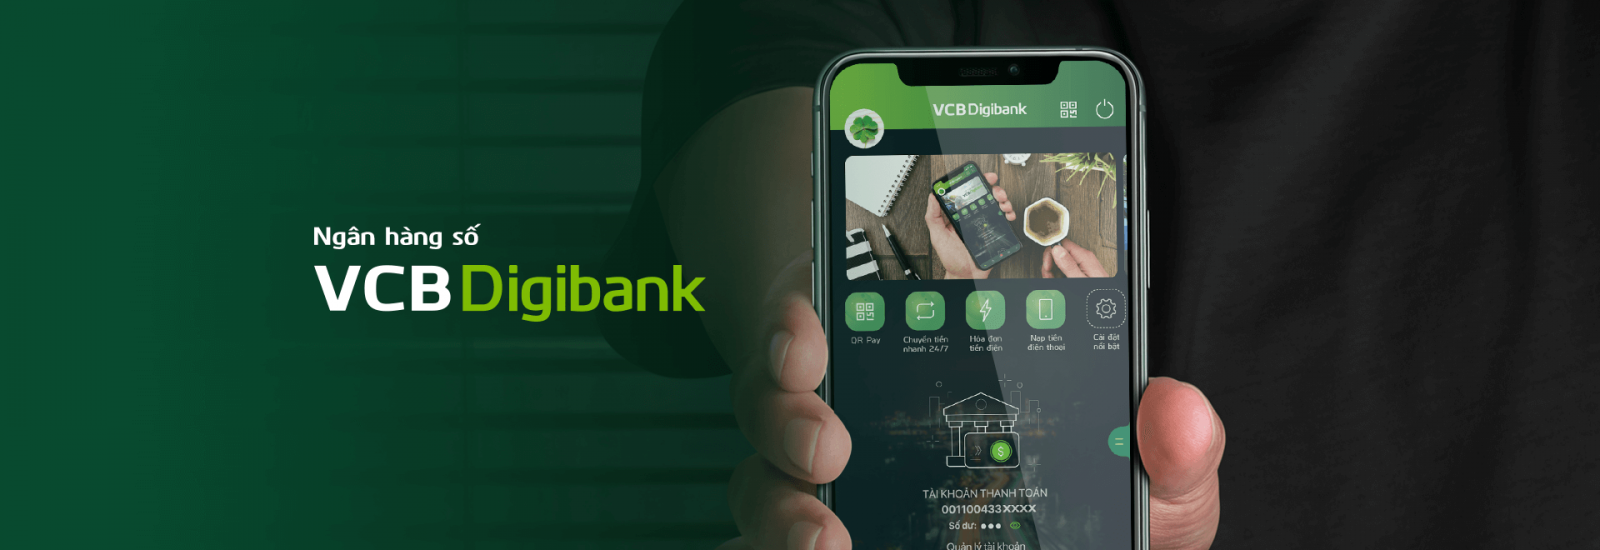 VCB Digibank tung ra khuyến mại giảm tới 100.000 đồng khi người dùng giao dịch tại các tính năng sau: Mã VNPAY100 giảm 100.000 đồng và Mã VNPAY50 giảm 50.000 đồng khi đặt “Vé xem phim”, “Vé xe”.